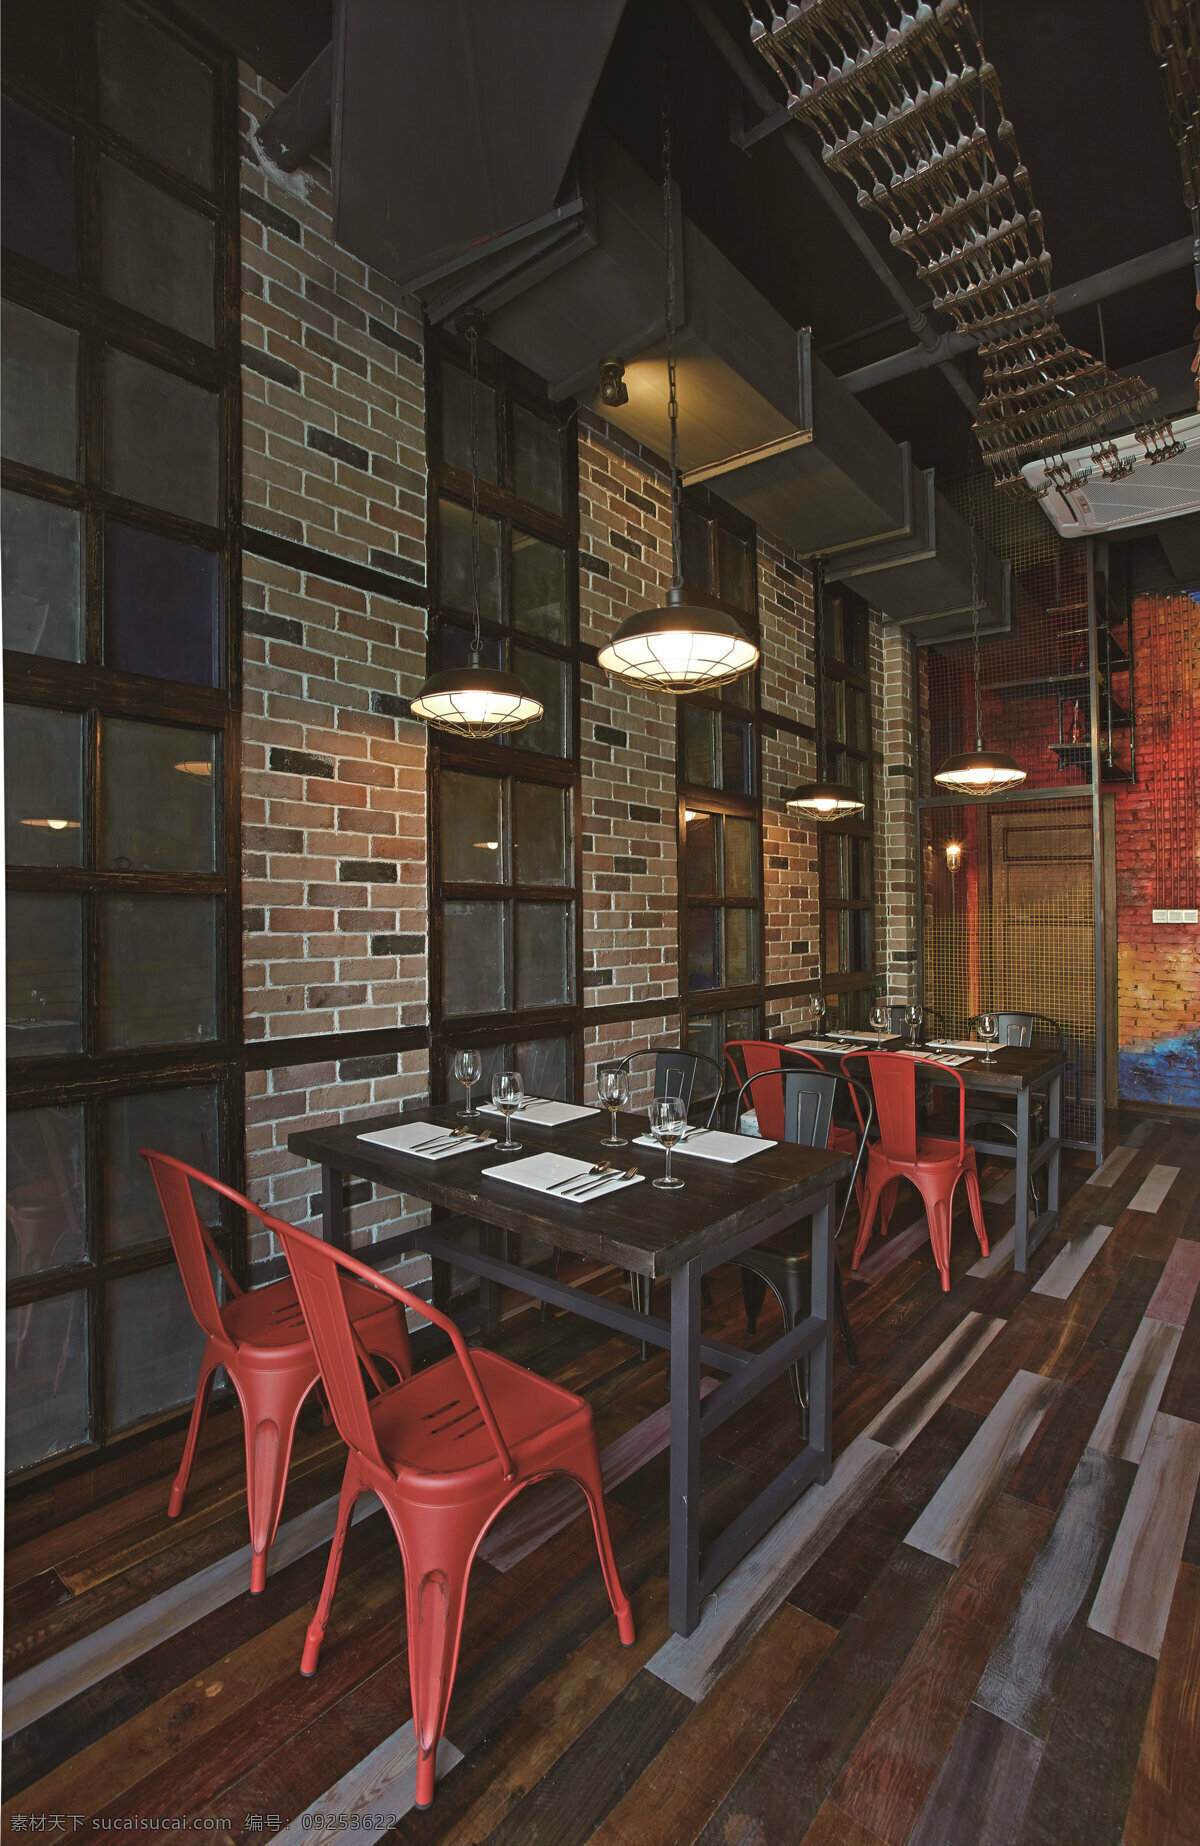 现代 金属 感 餐厅 做 旧 色 吊灯 工装 装修 效果图 木制餐桌 木地板 室内装修 工装装修 餐厅装修